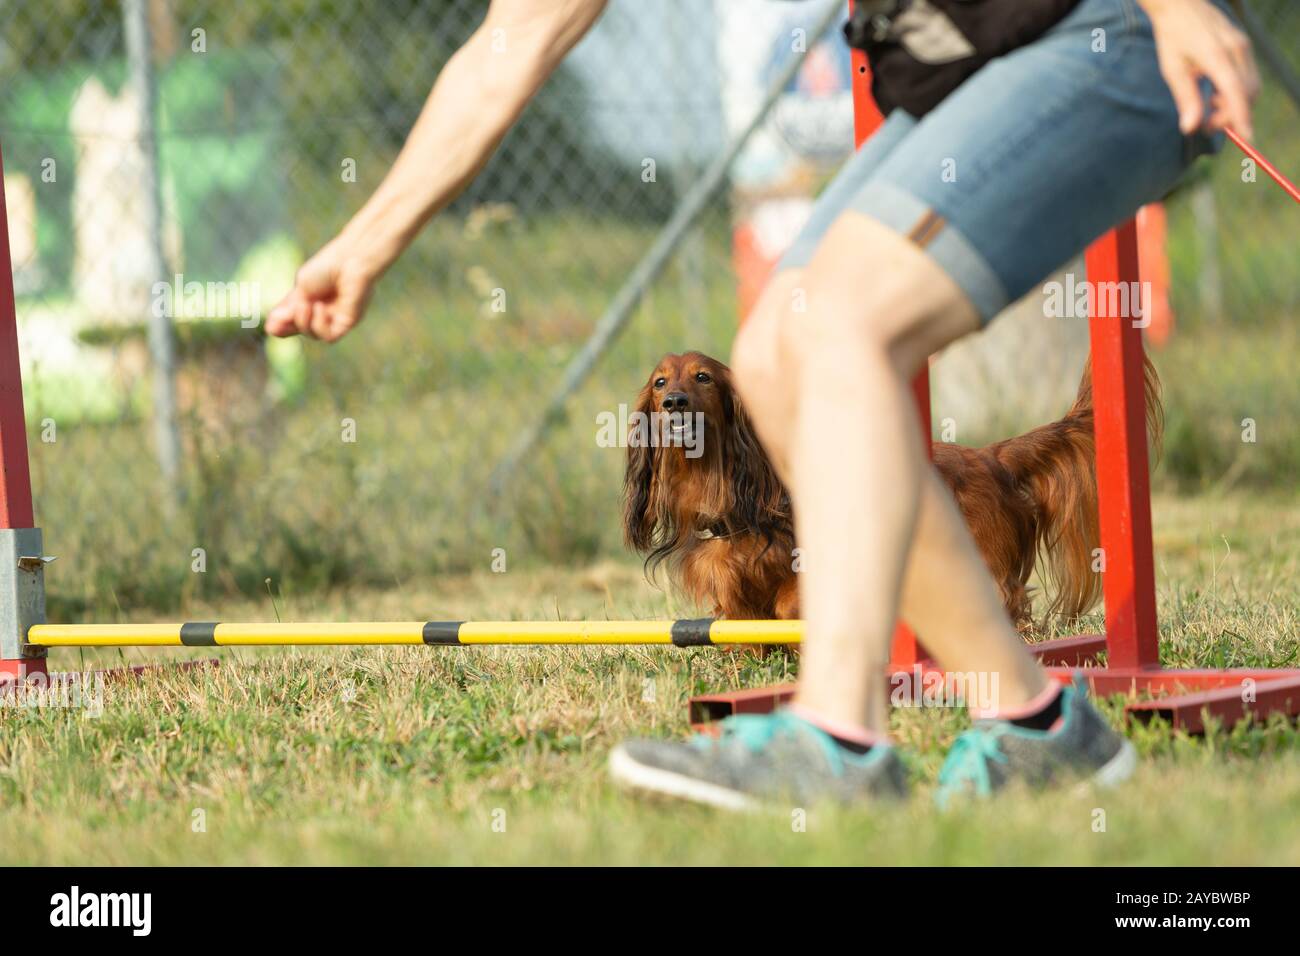 Un teckel marrone o dachshund puro cane di razza impara a saltare oltre gli ostacoli con i segnali di mano umana in addestramento di agilità al cane scho Foto Stock